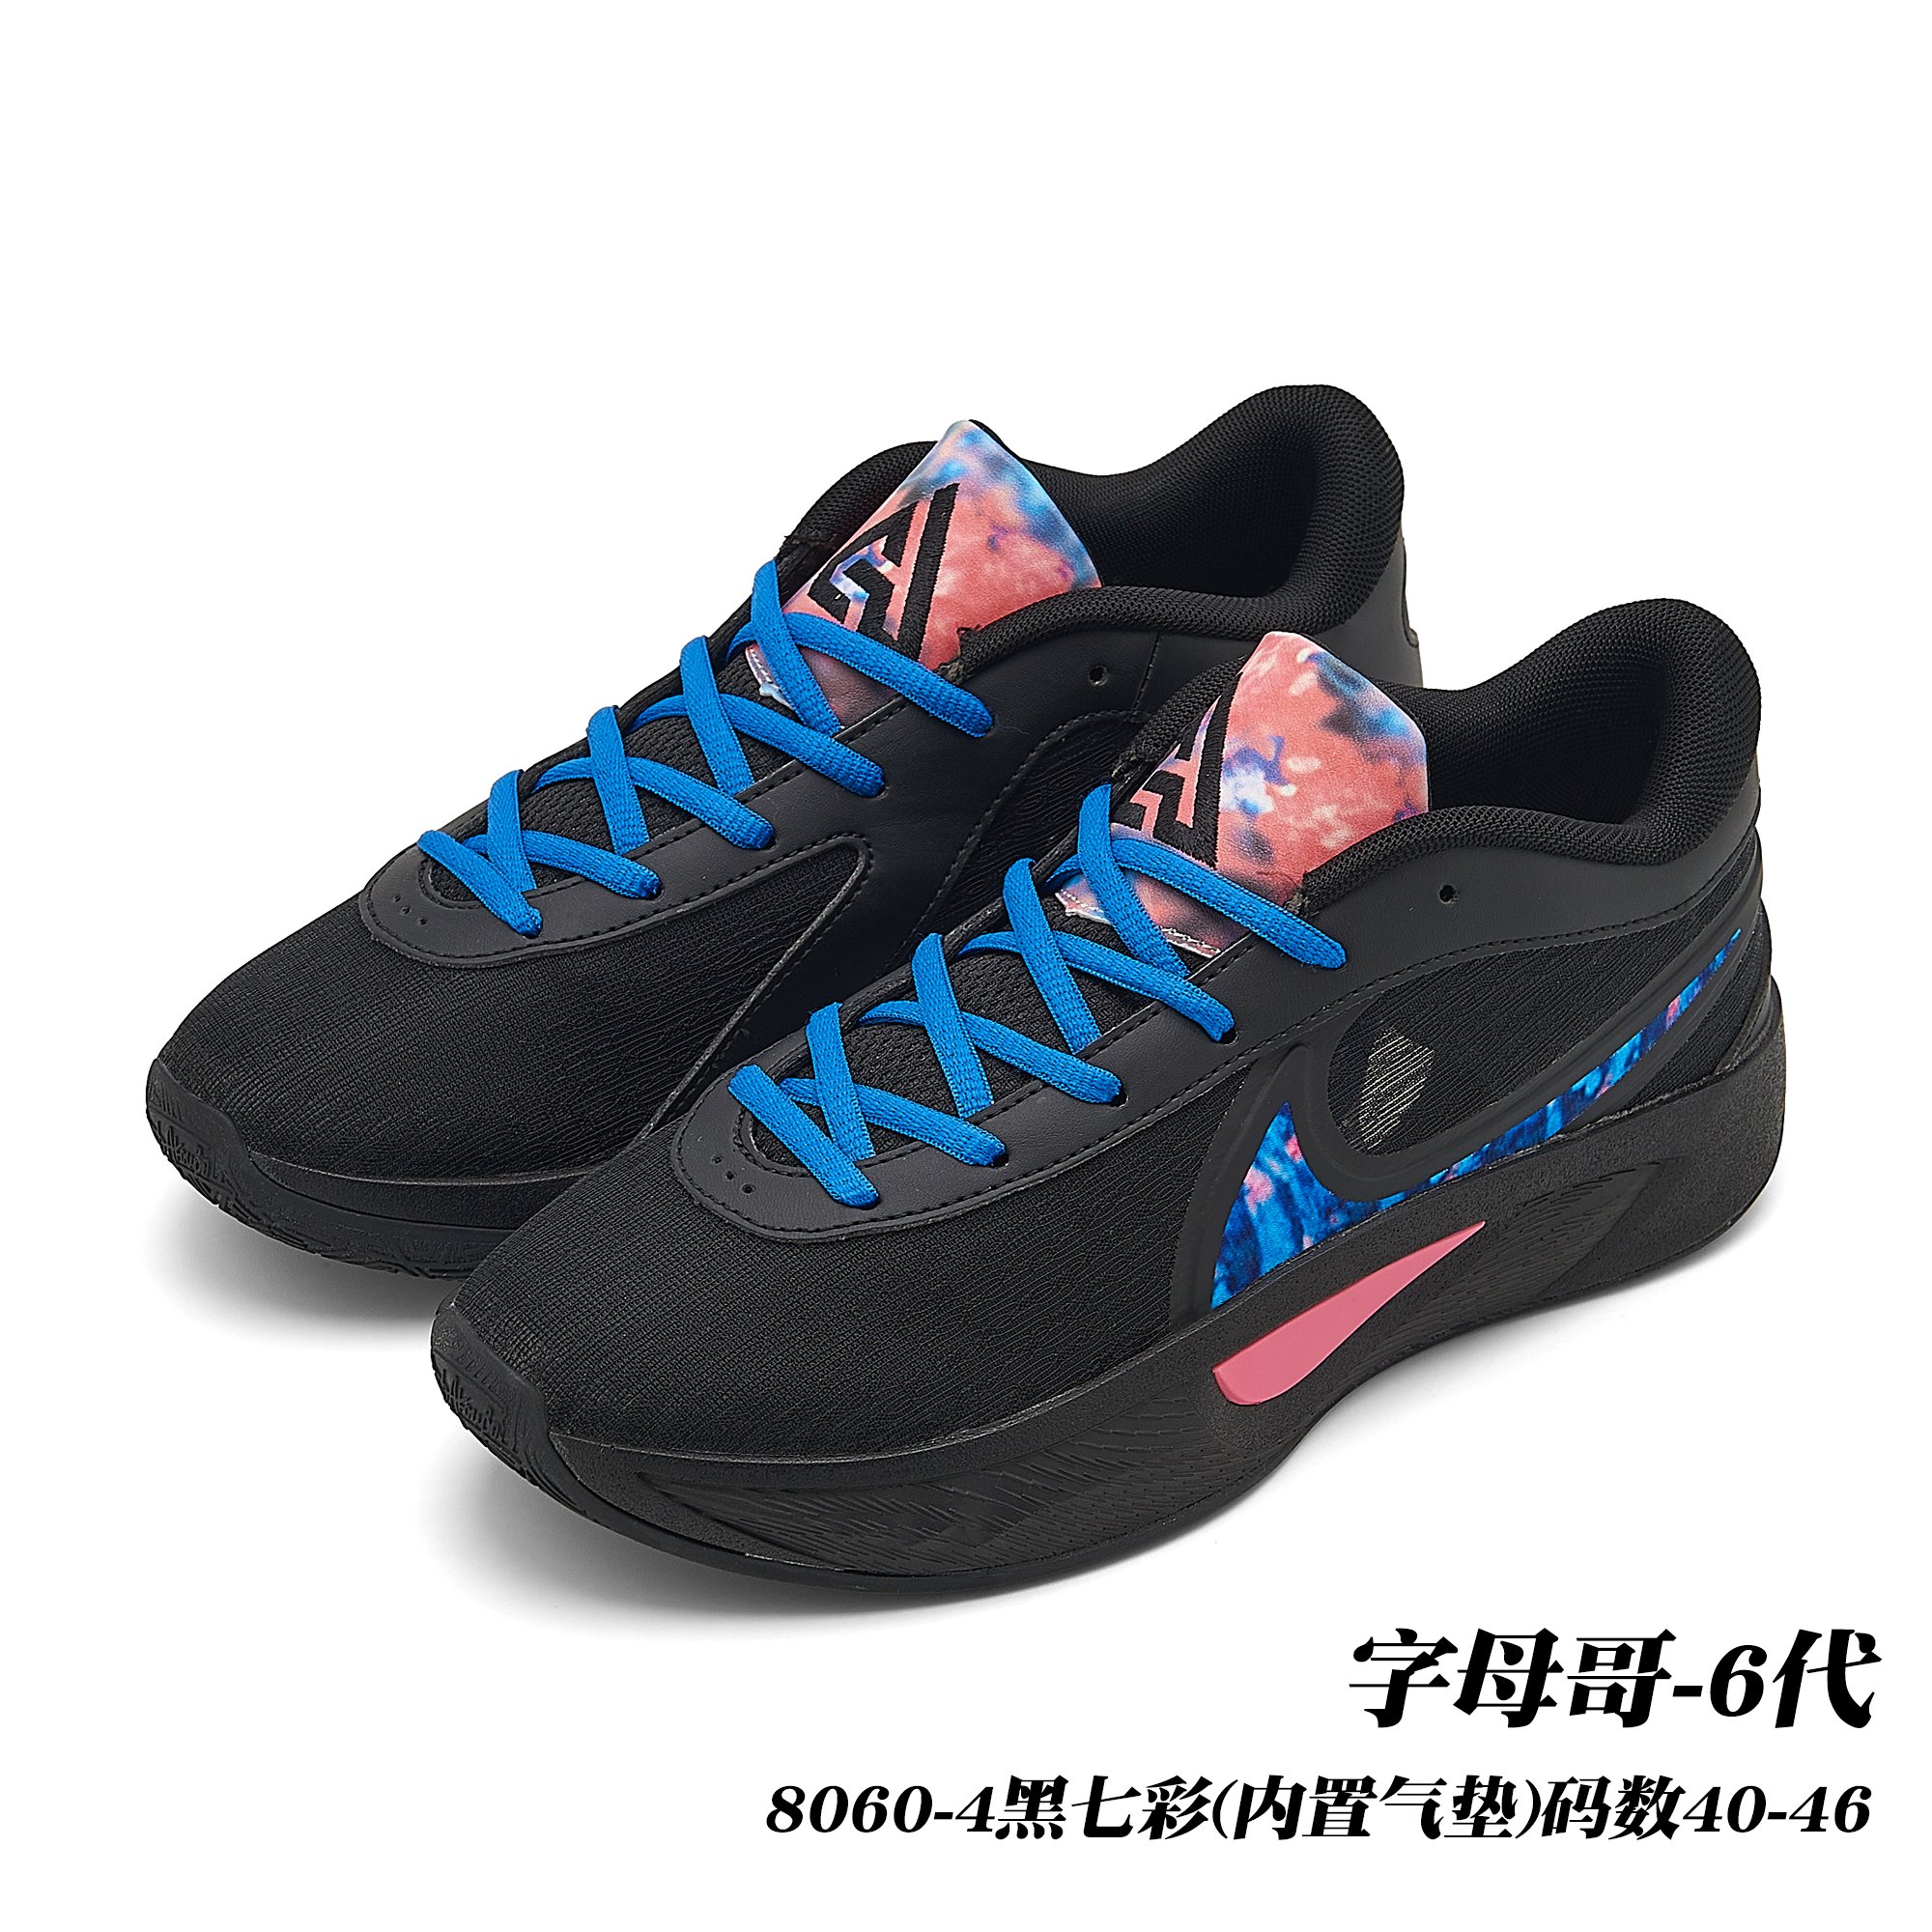 Nike Sapatos Tênis Casual